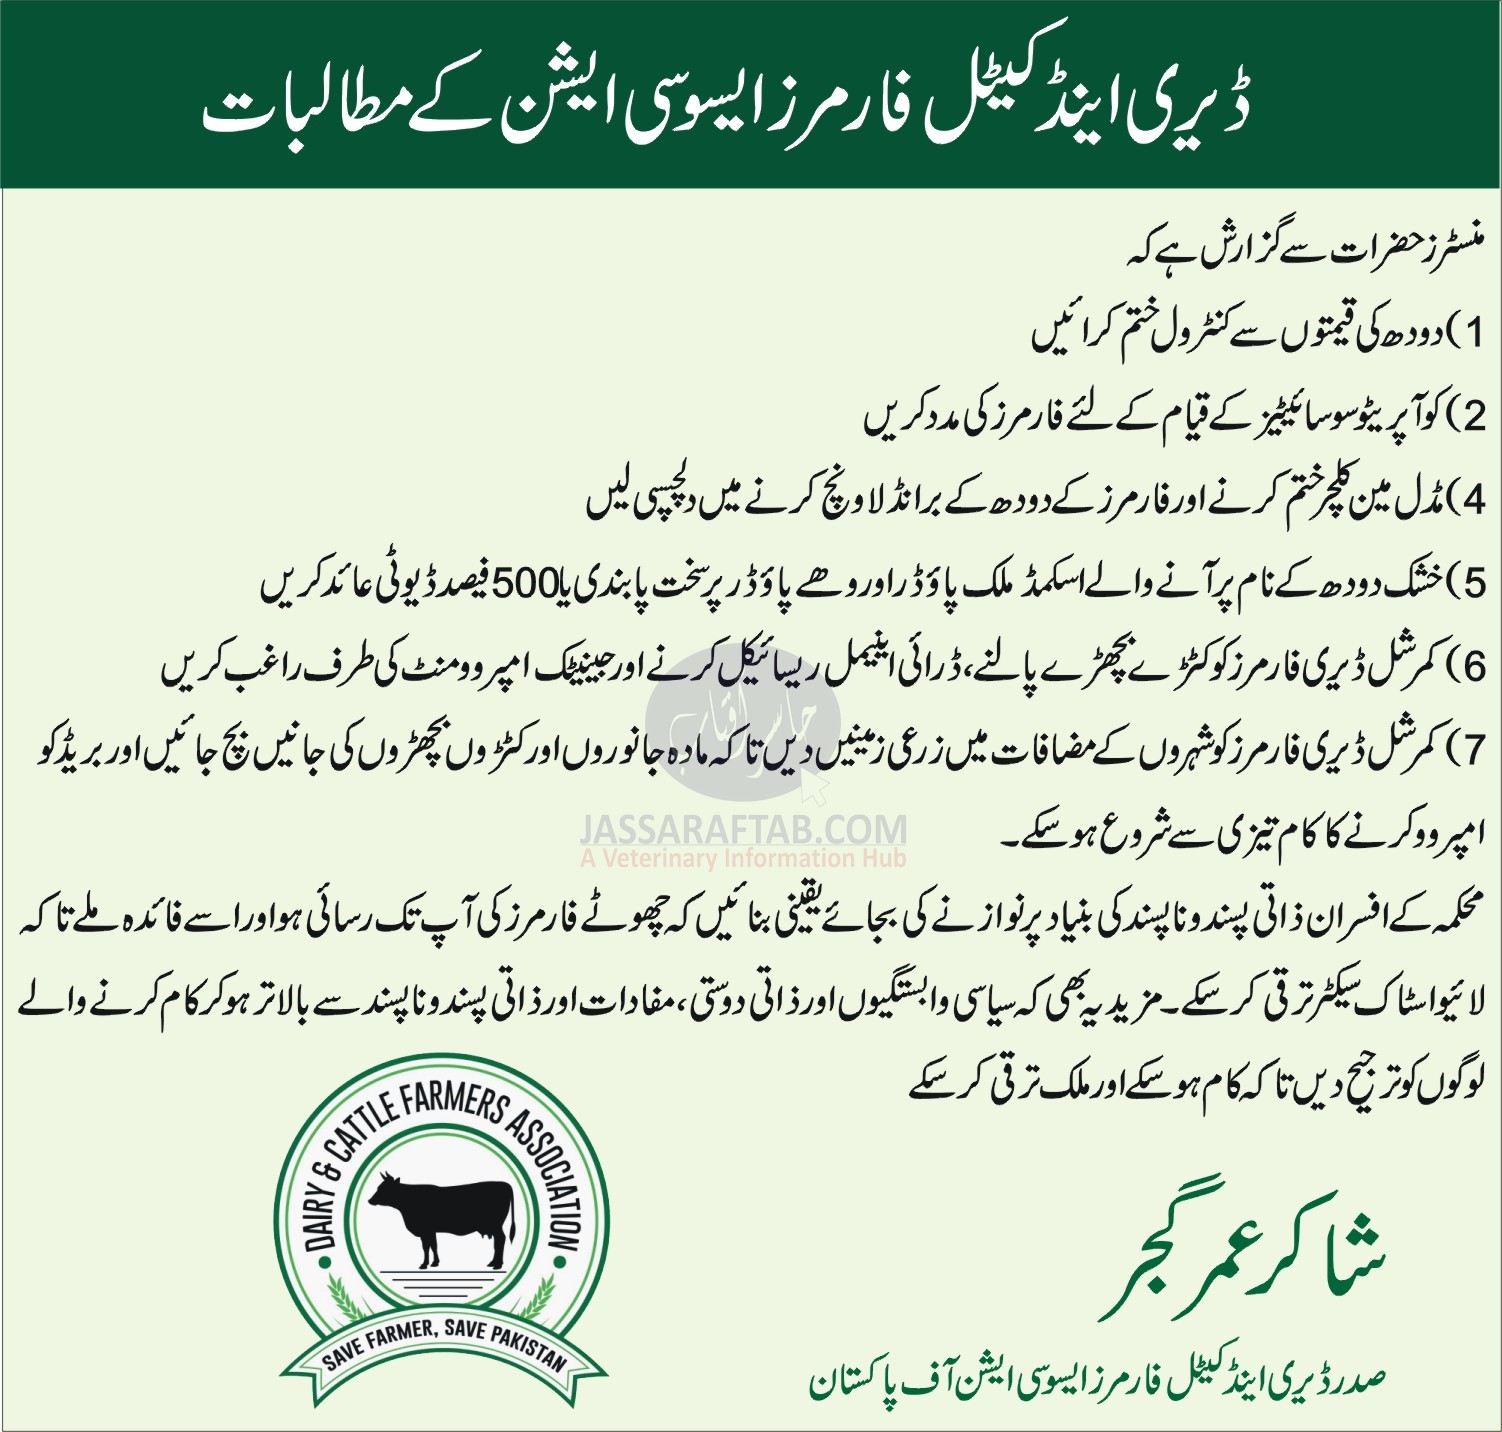 Demands of DCFA Pakistan. Demands of Dairy